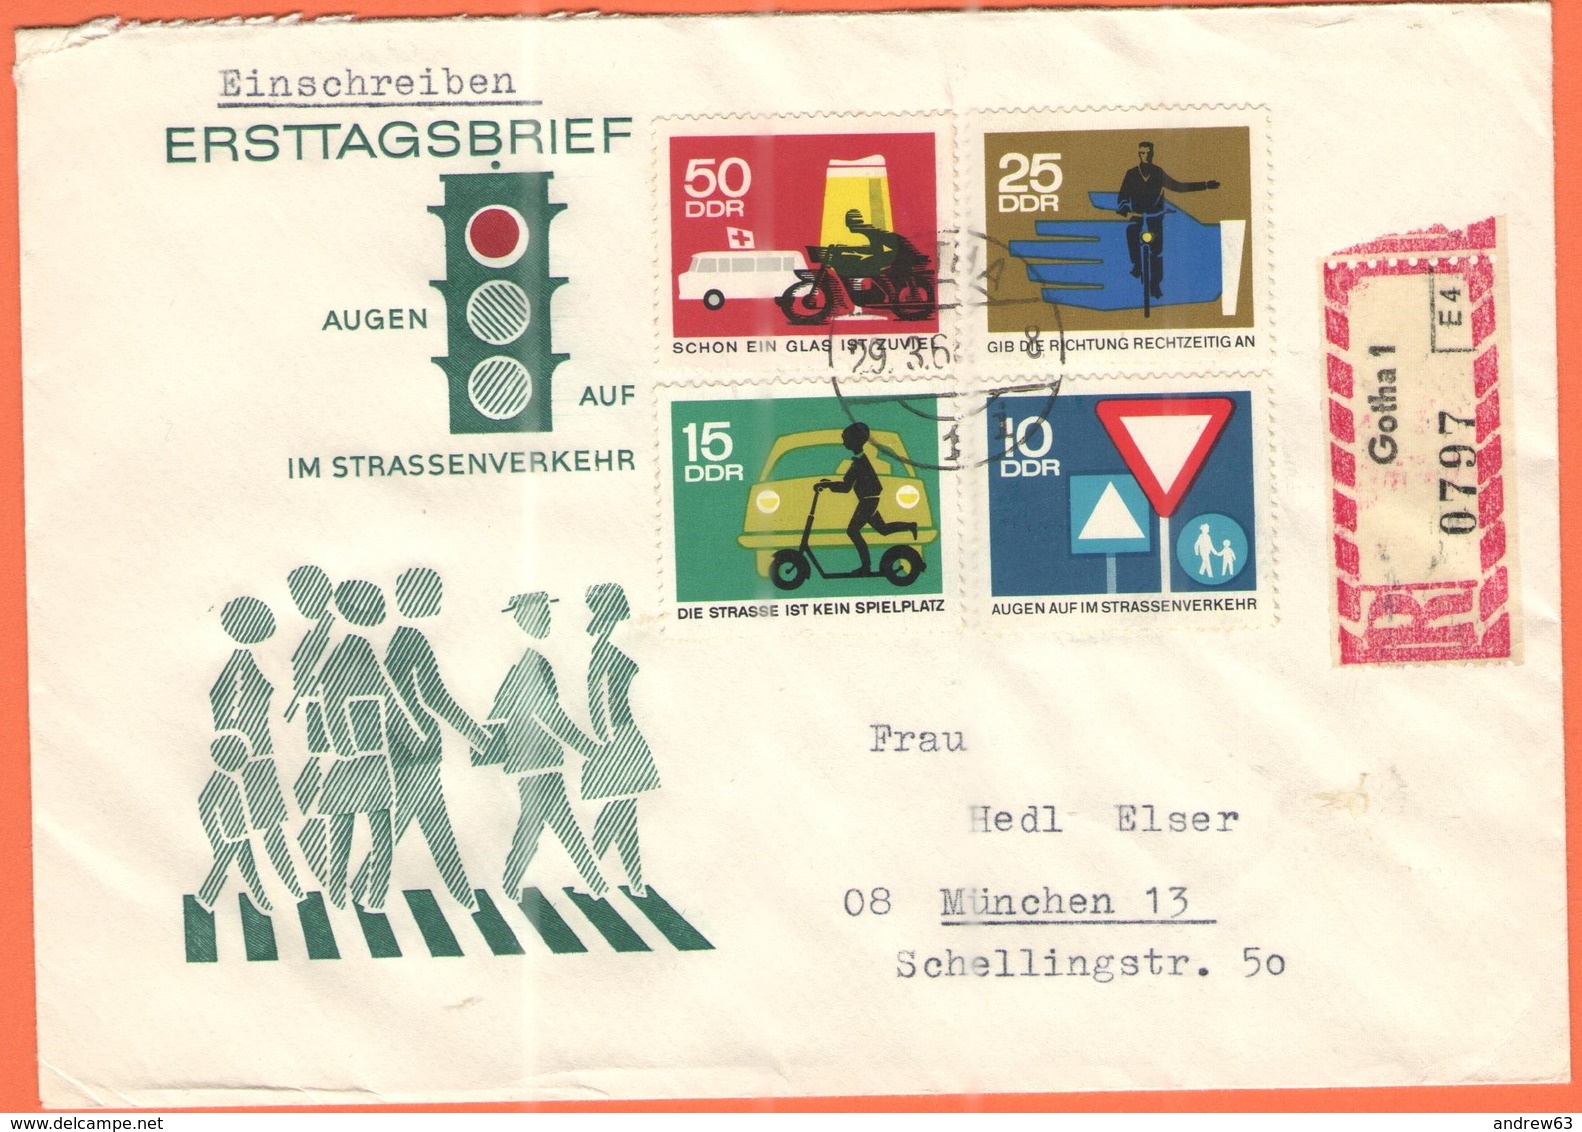 GERMANIA - GERMANY - Deutschland - ALLEMAGNE - DDR - 1965 - 4 X Augen Auf Im Strassenverkehr On FDC Cover - Einschreiben - Storia Postale